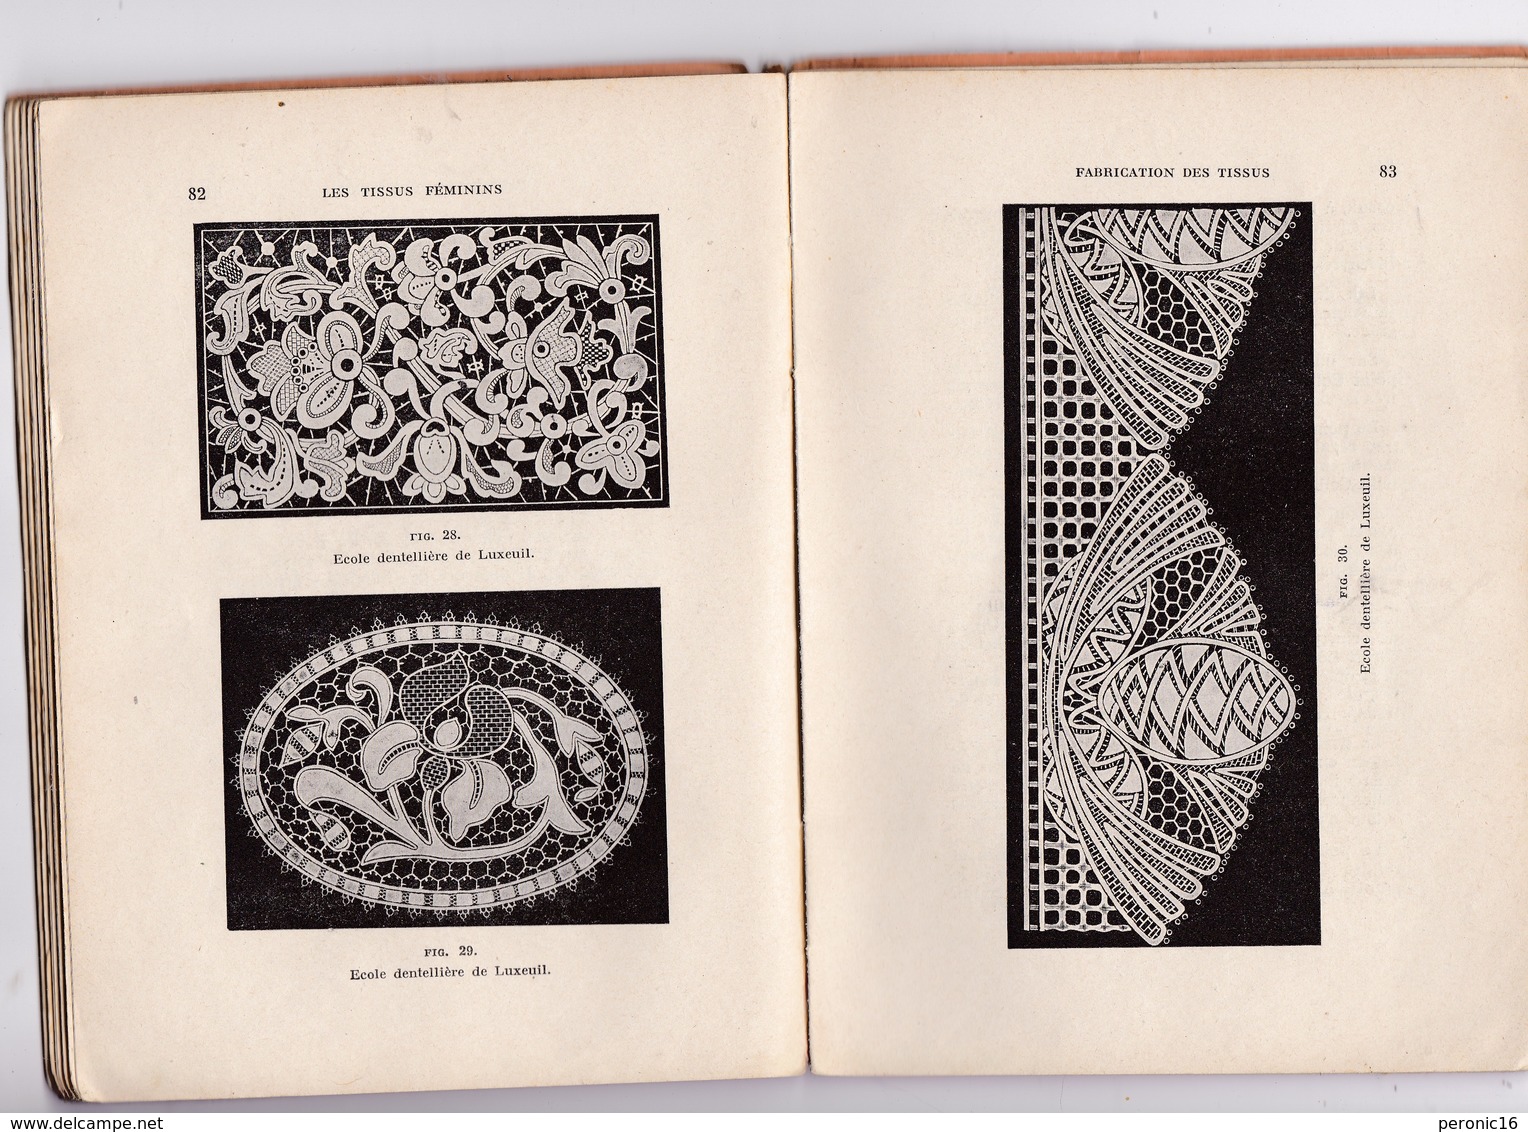 Rare «Livre De La Profession» ! L. Doresse, Les Tissus Féminins, 2e édition, Eyrolles, Paris, 1929 - Dentelles Et Tissus